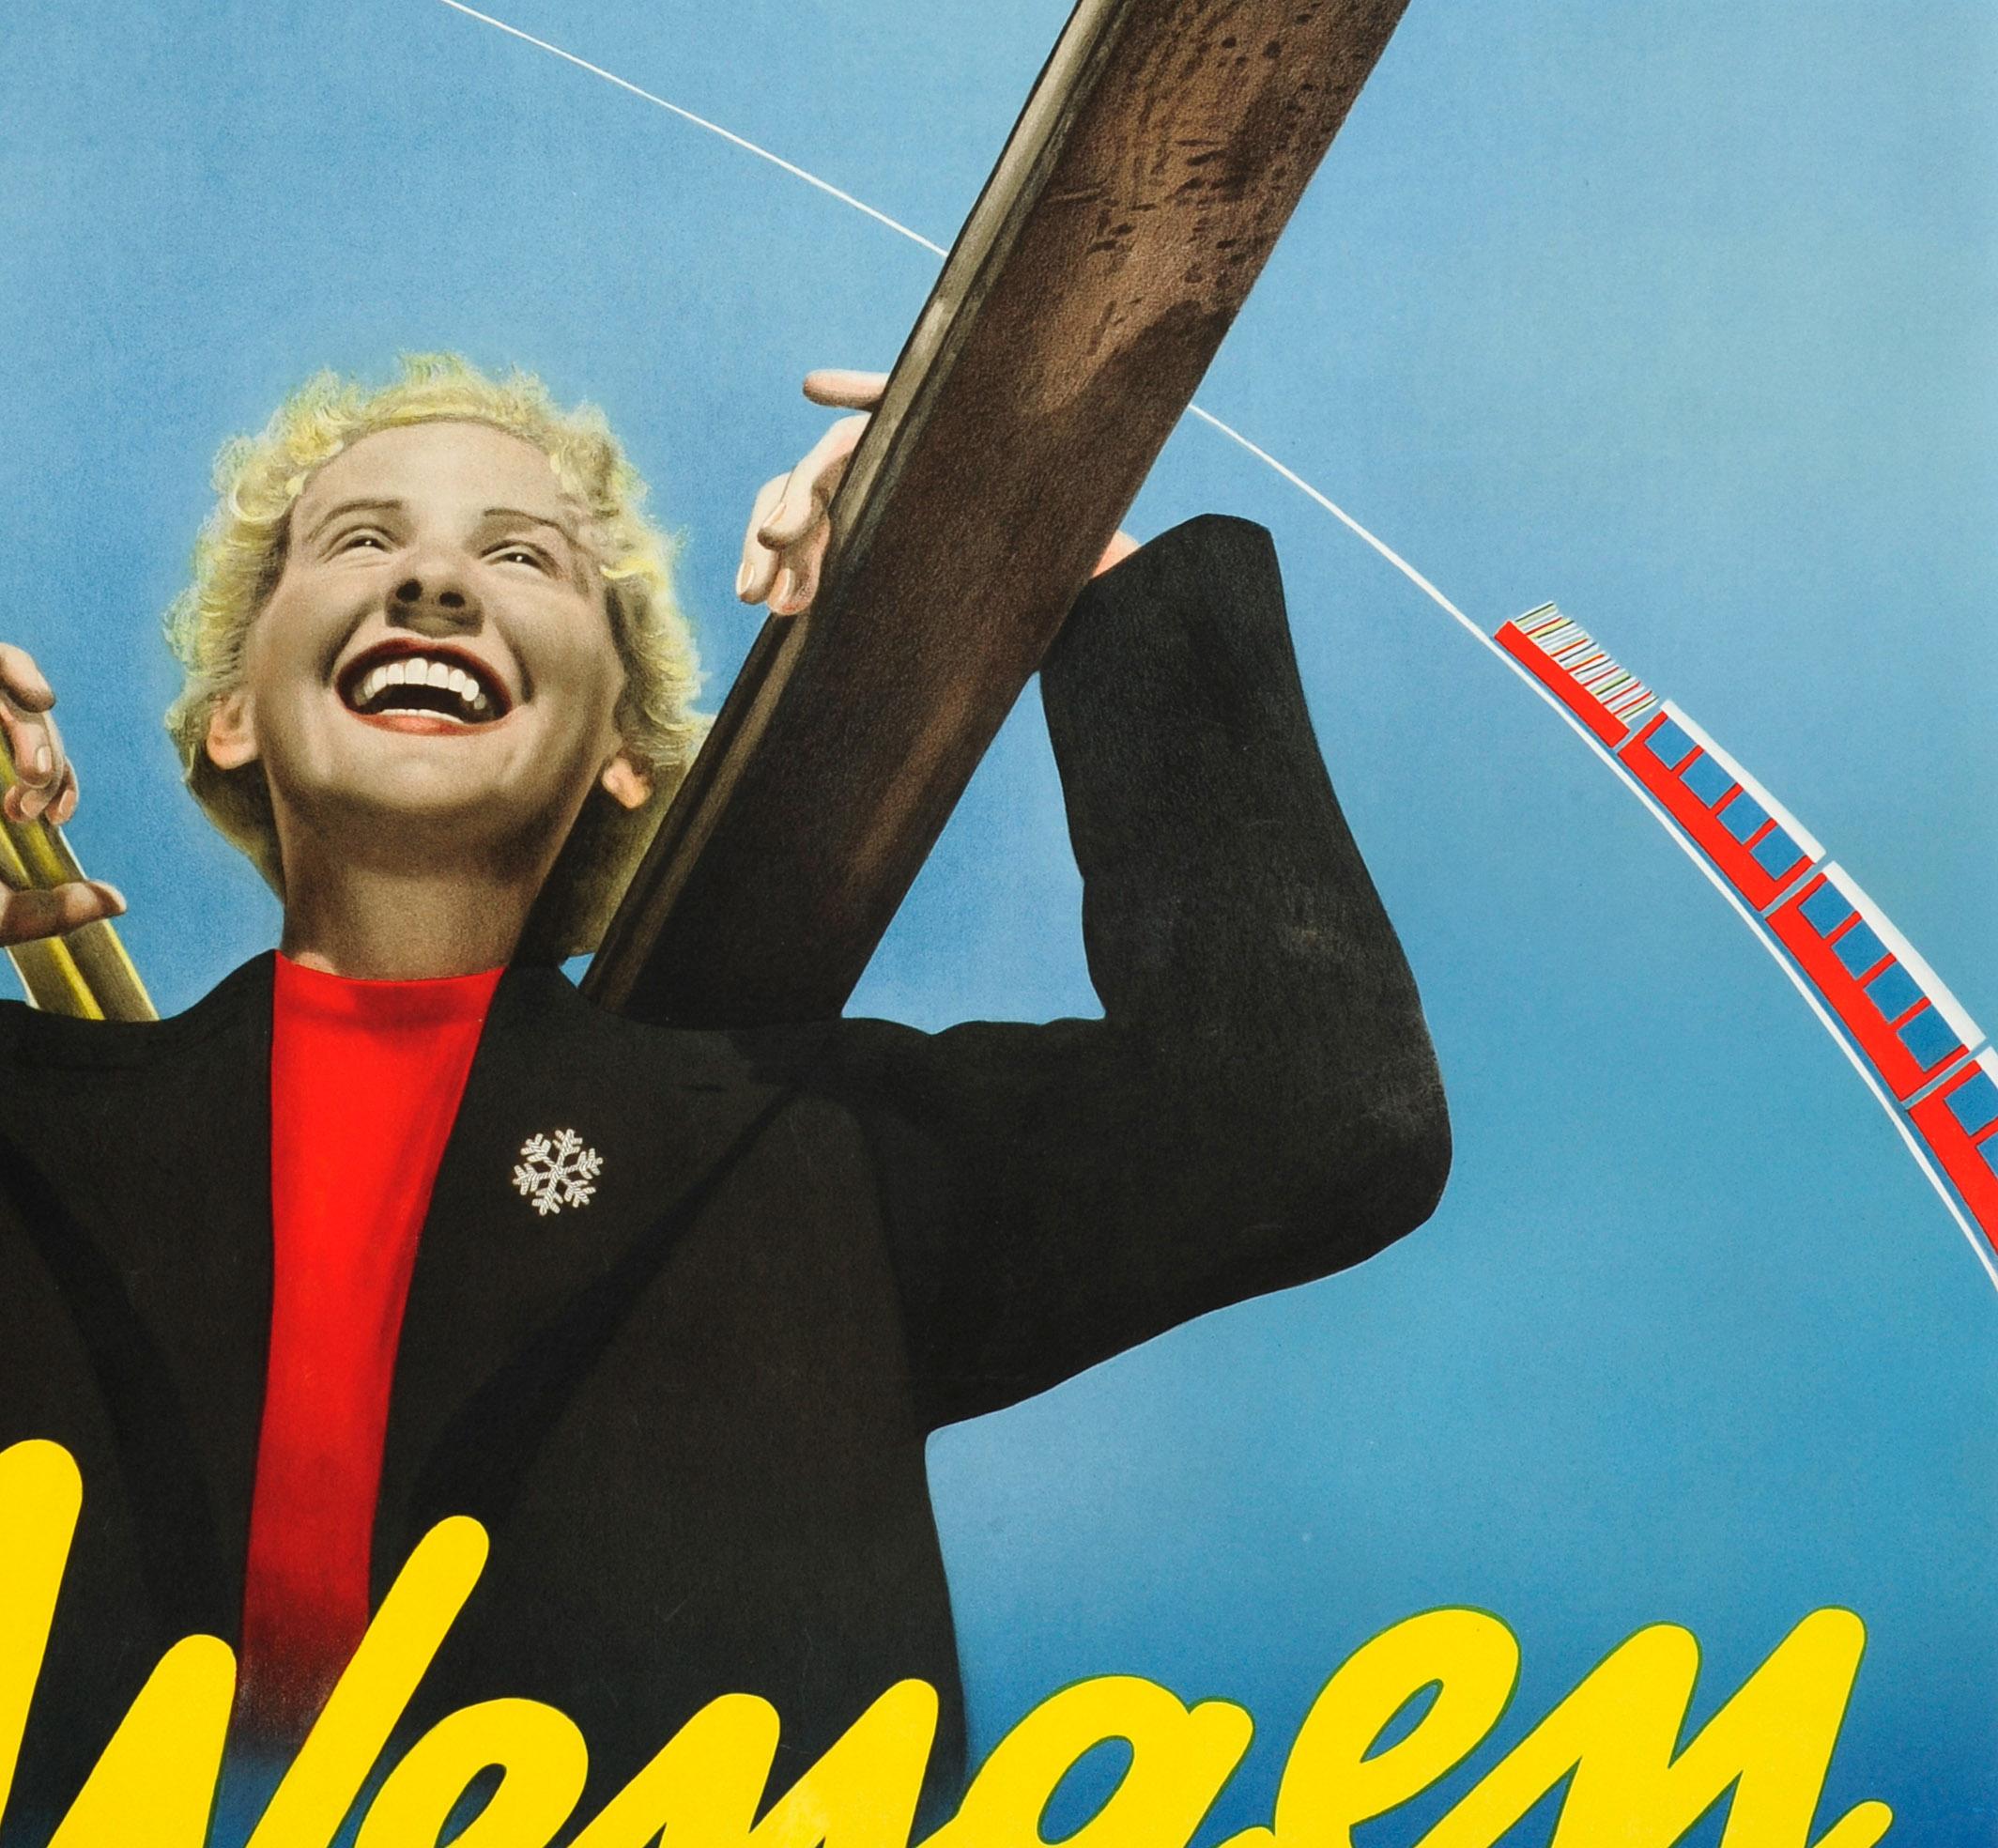 Affiche vintage originale de voyage pour le ski faisant la promotion de la station alpine populaire de Wengen en Suisse. La photo représente une dame blonde riant et portant un haut rouge avec une broche en forme de flocon de neige sur sa veste